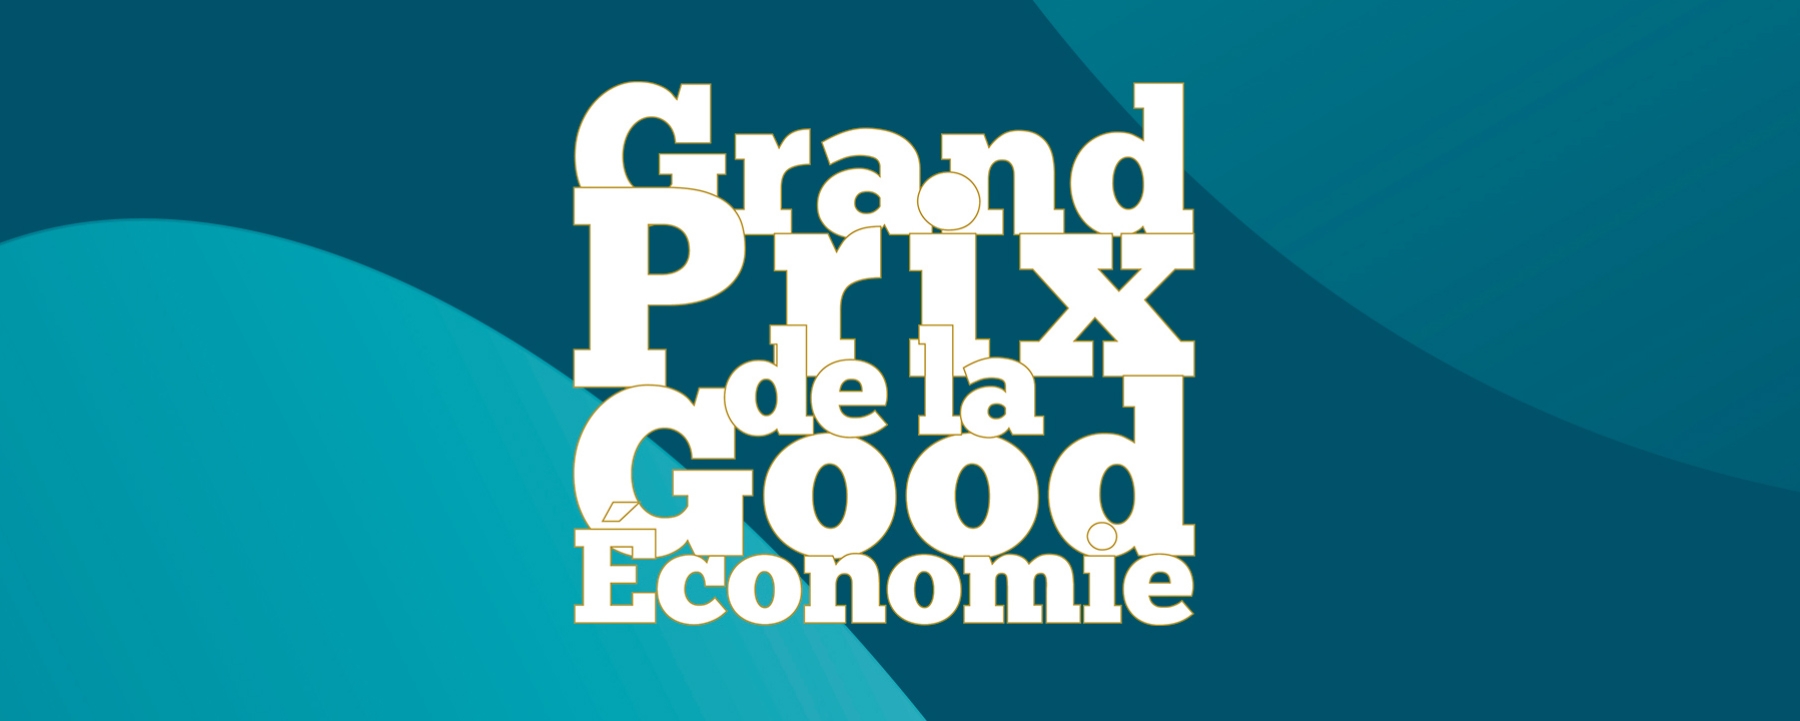 Grand Prix de la Good Economie - 3ème édition